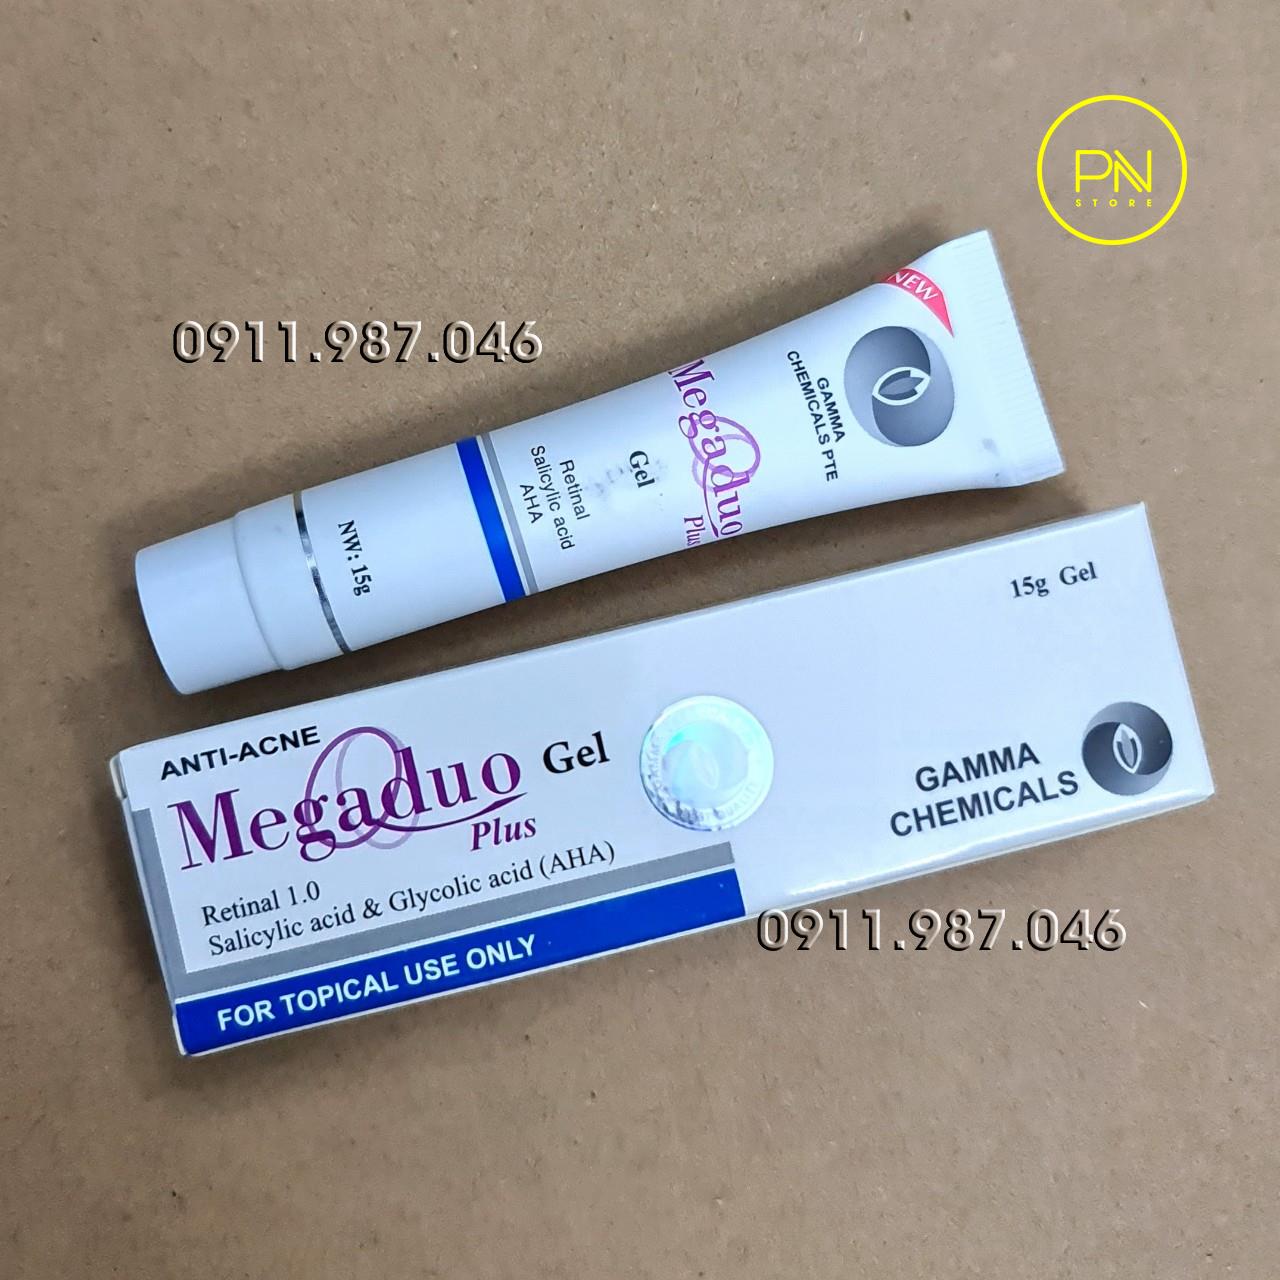 Megaduo Plus gel 15g Retinal 1.0 trị mụn thâm trẻ hóa đẹp da chính hãng - PN100177